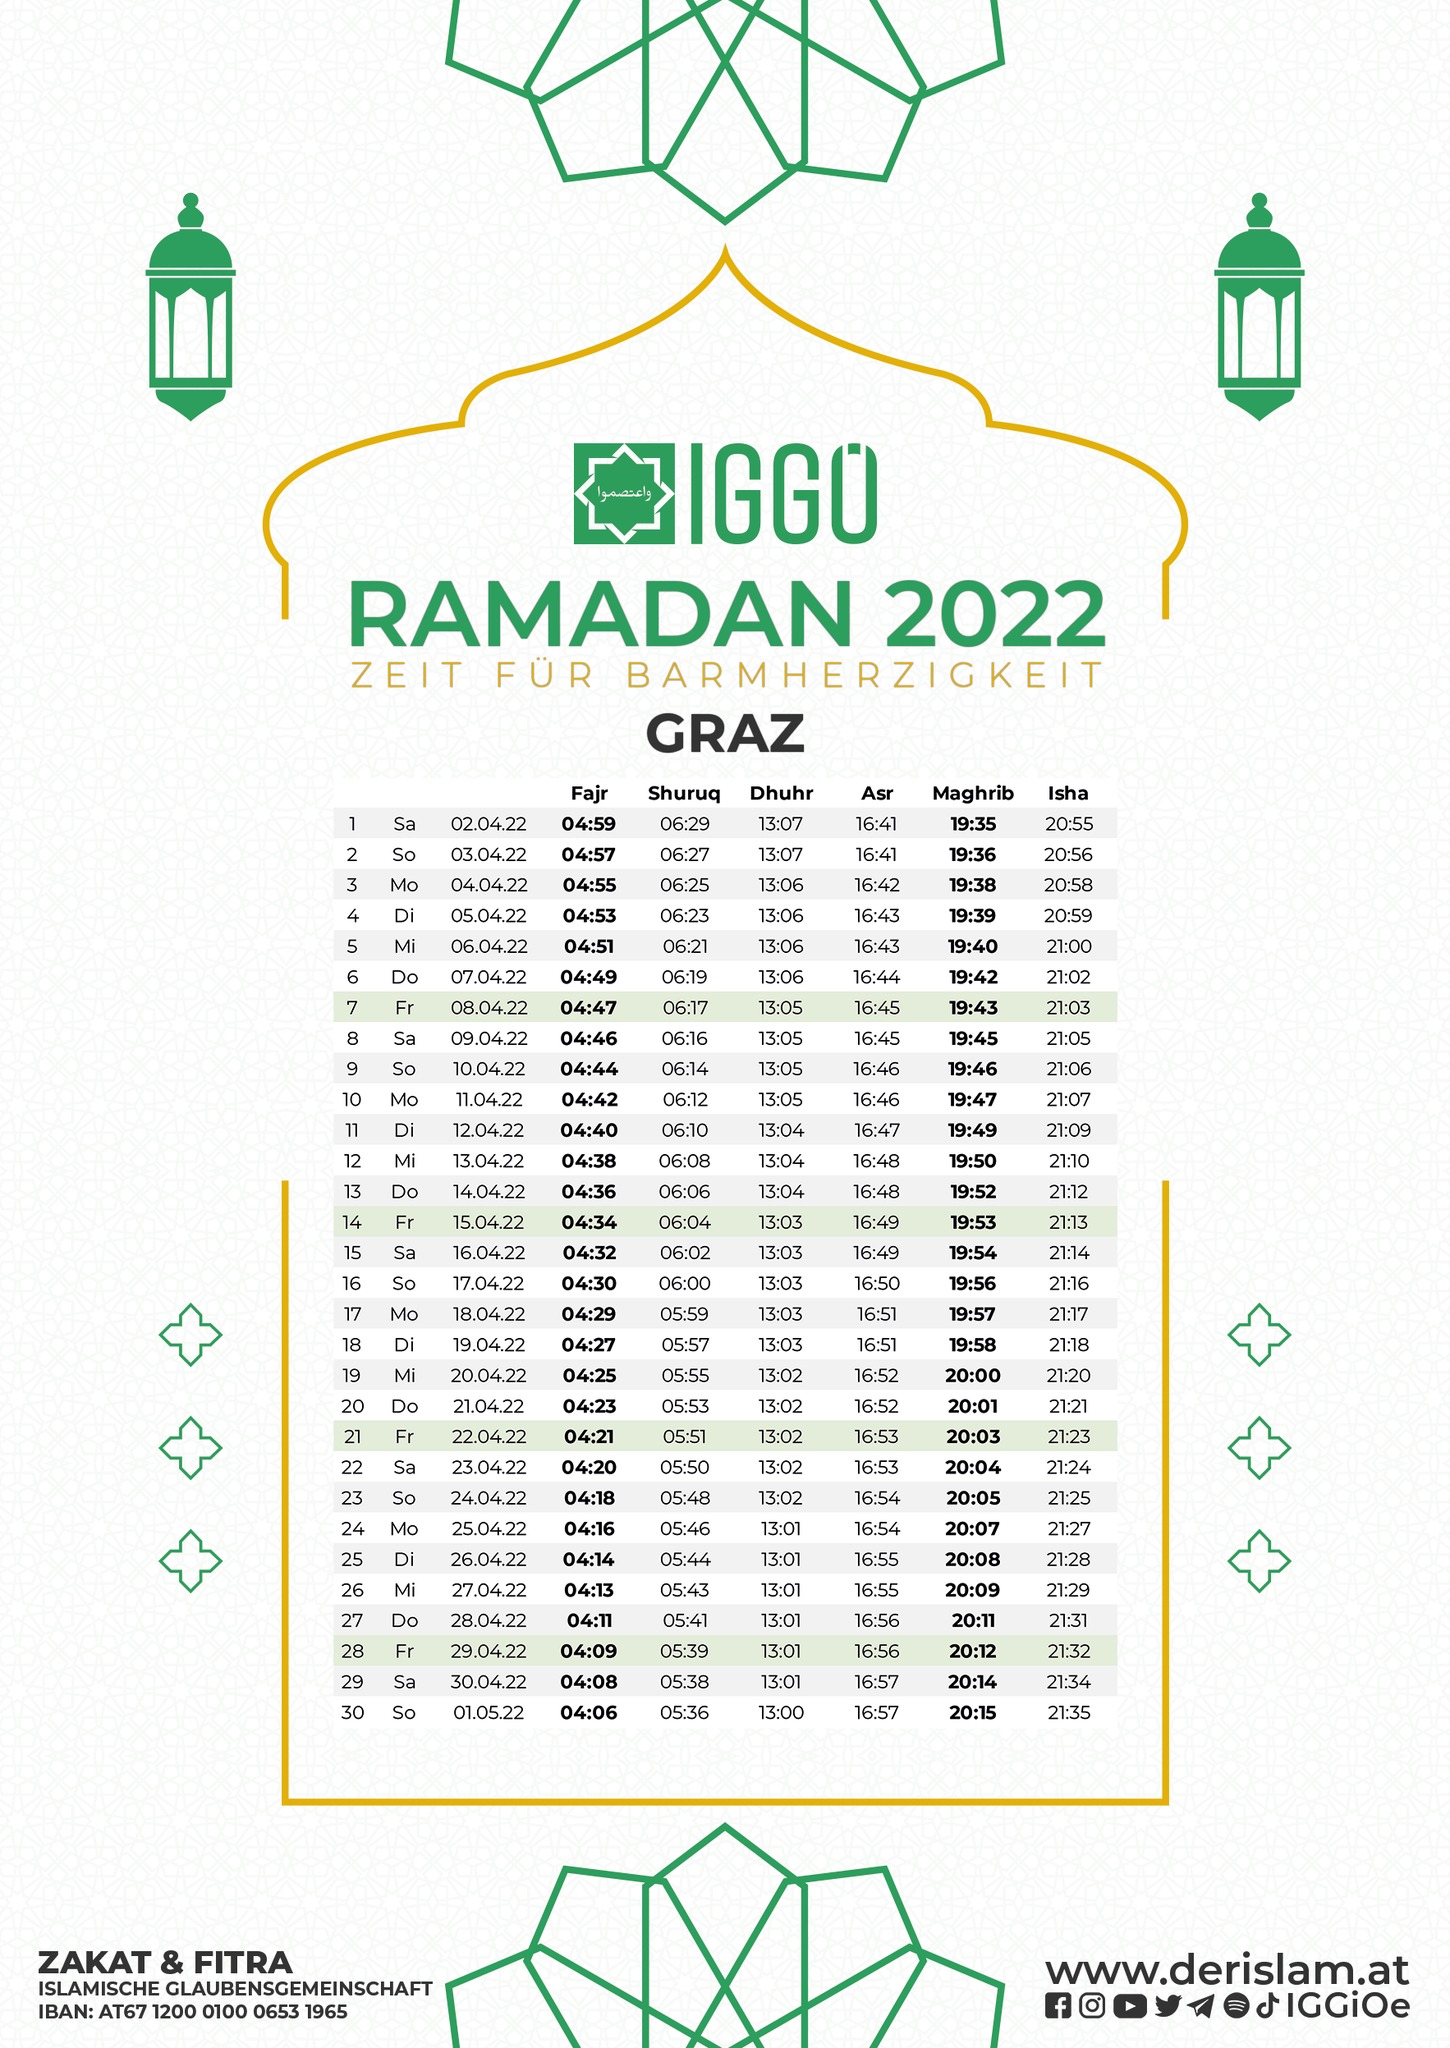 إمساكية رمضان لمدينة غراتس 2022